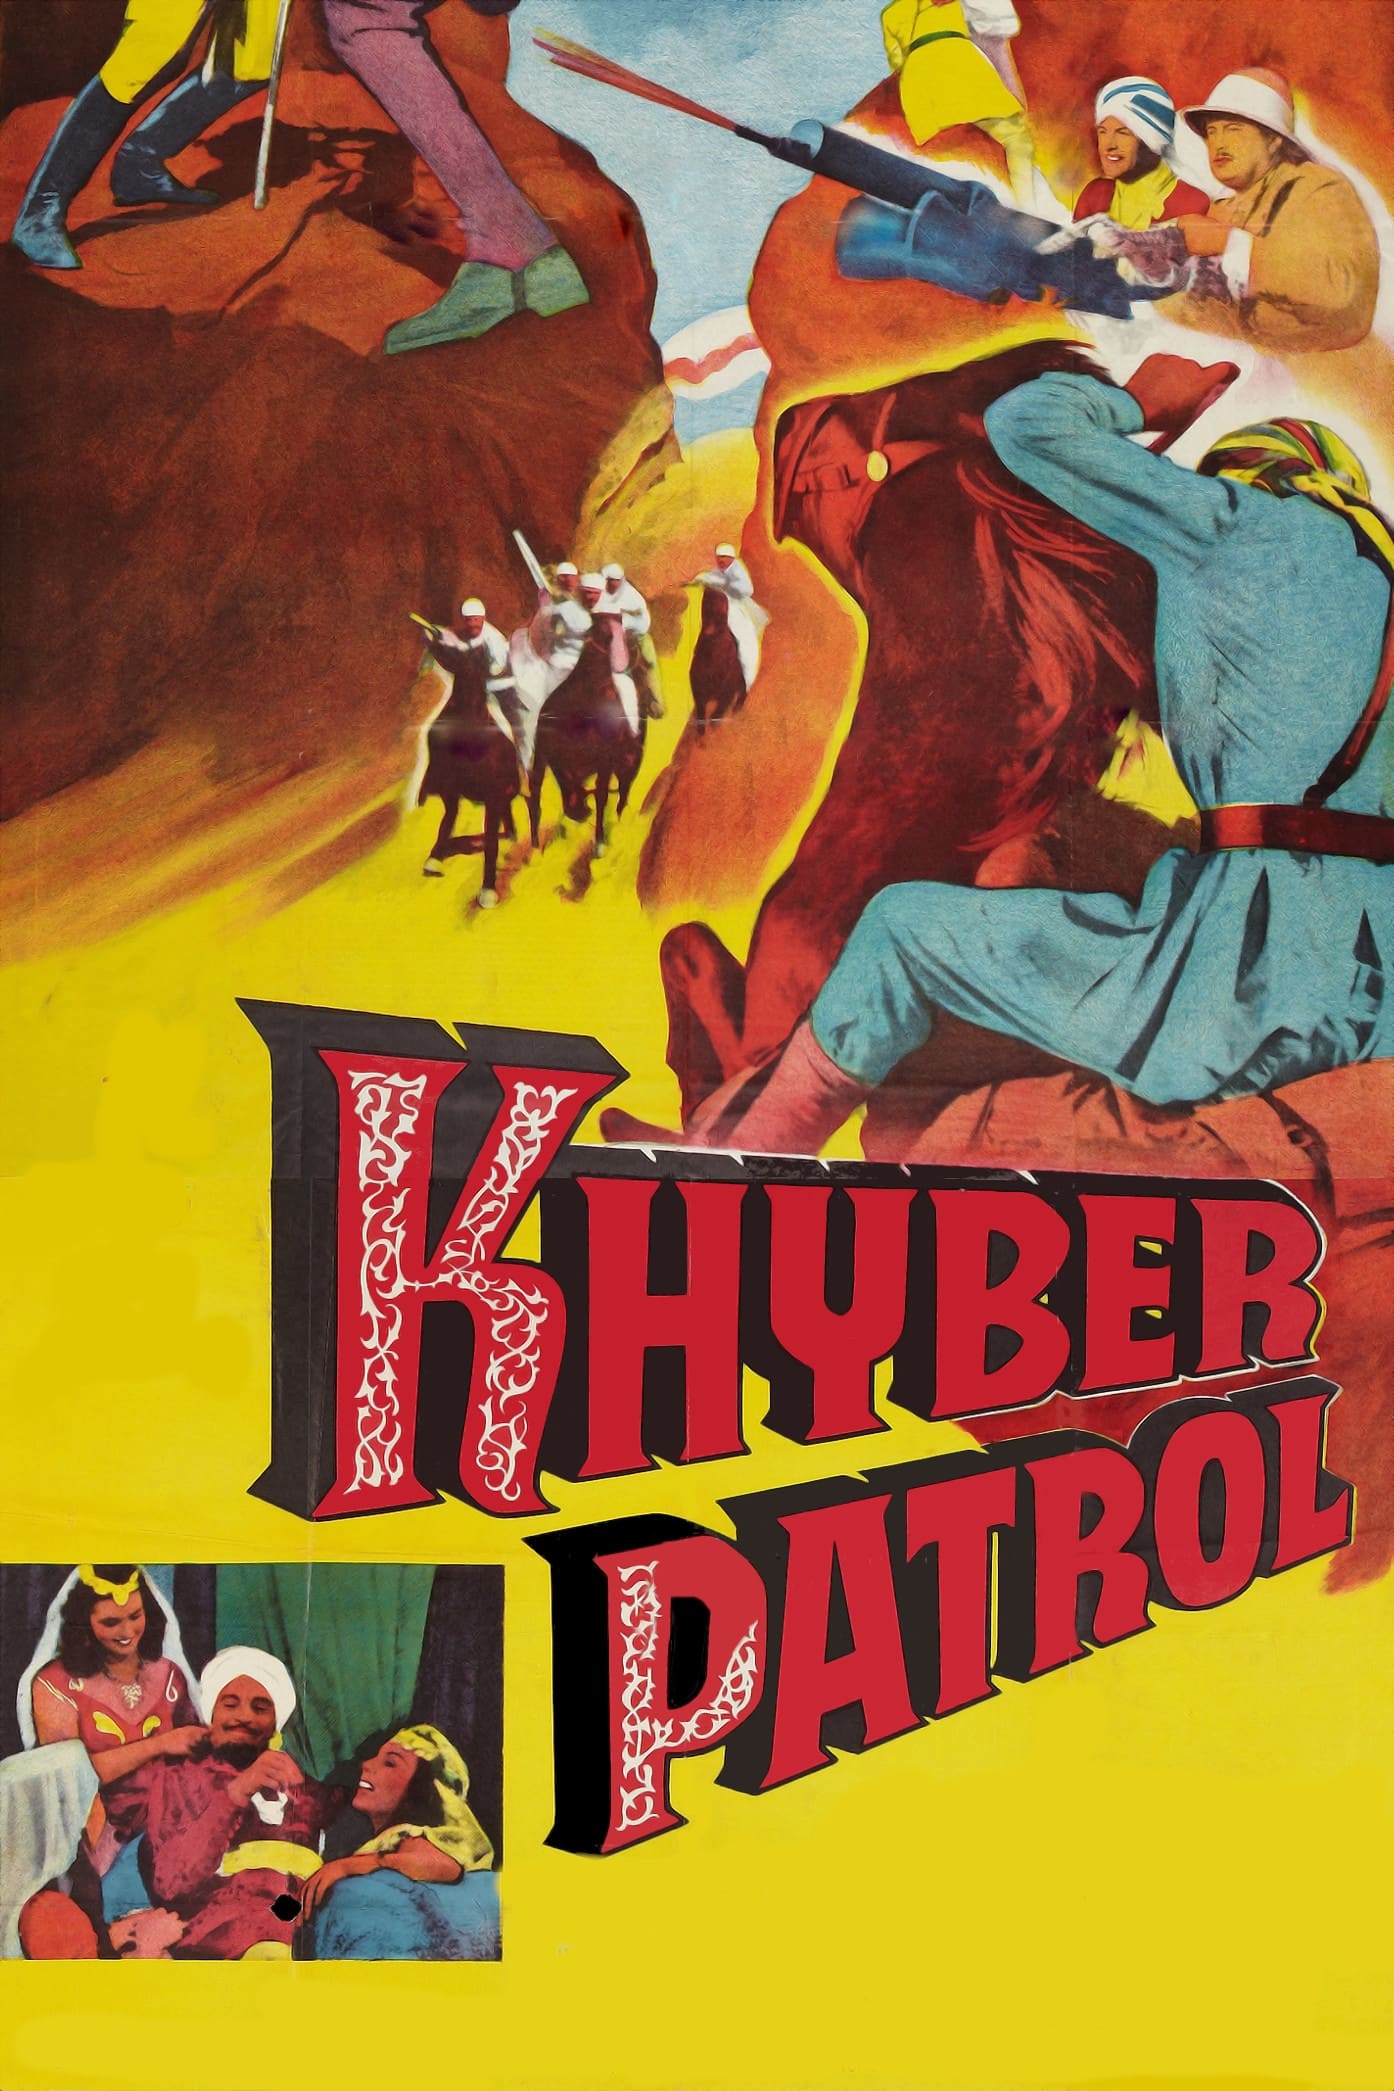 Khyber Patrol